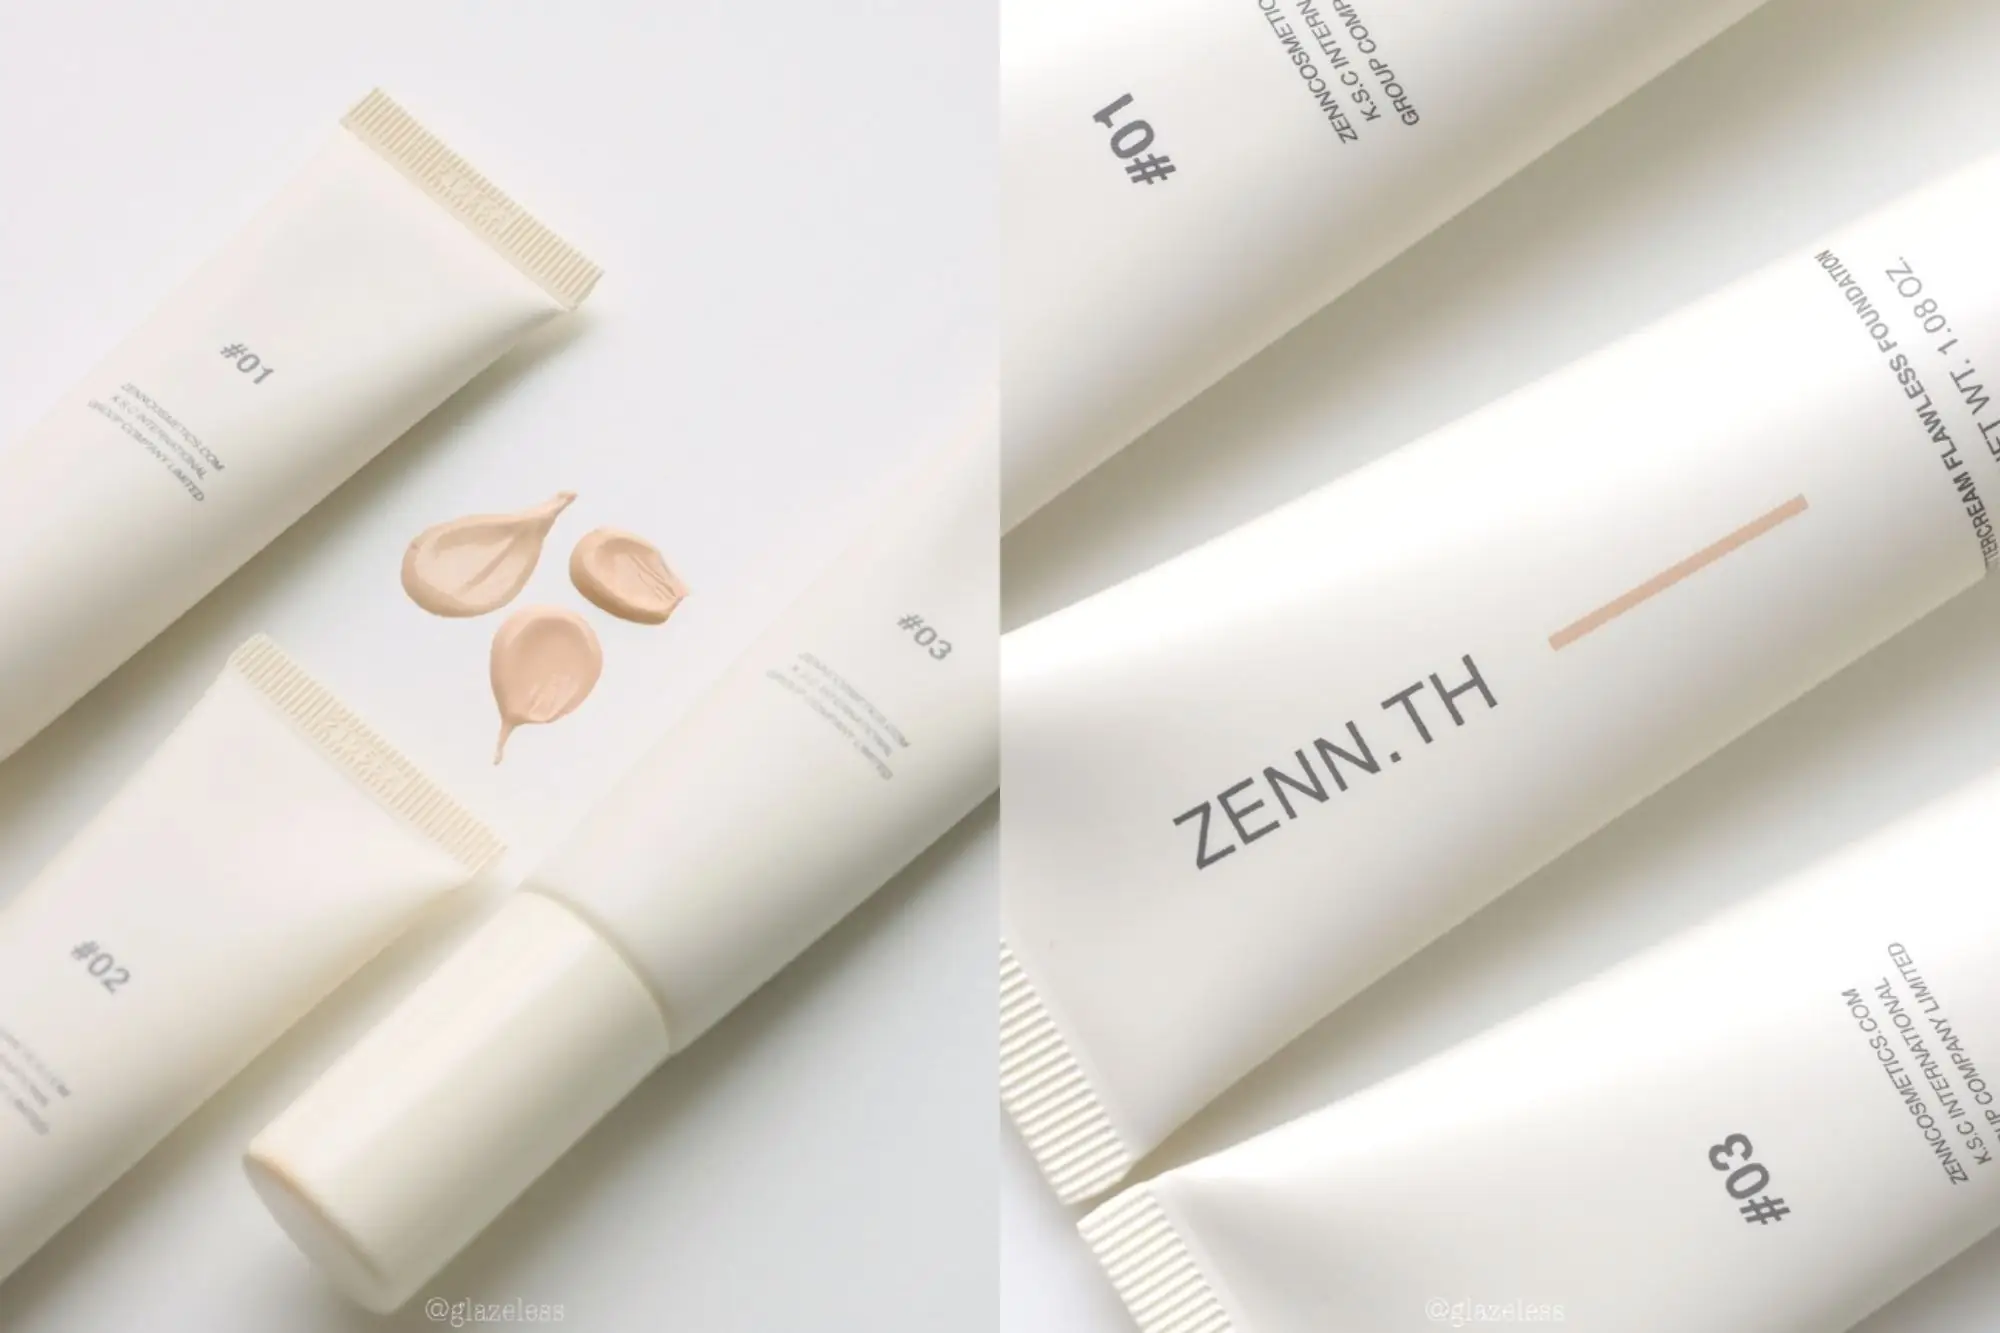 质感超棒的泰国品牌ZENN.TH，是泰国知名美妆品牌Tokyo Dolls的副牌。（图片来源：品牌官方FB）